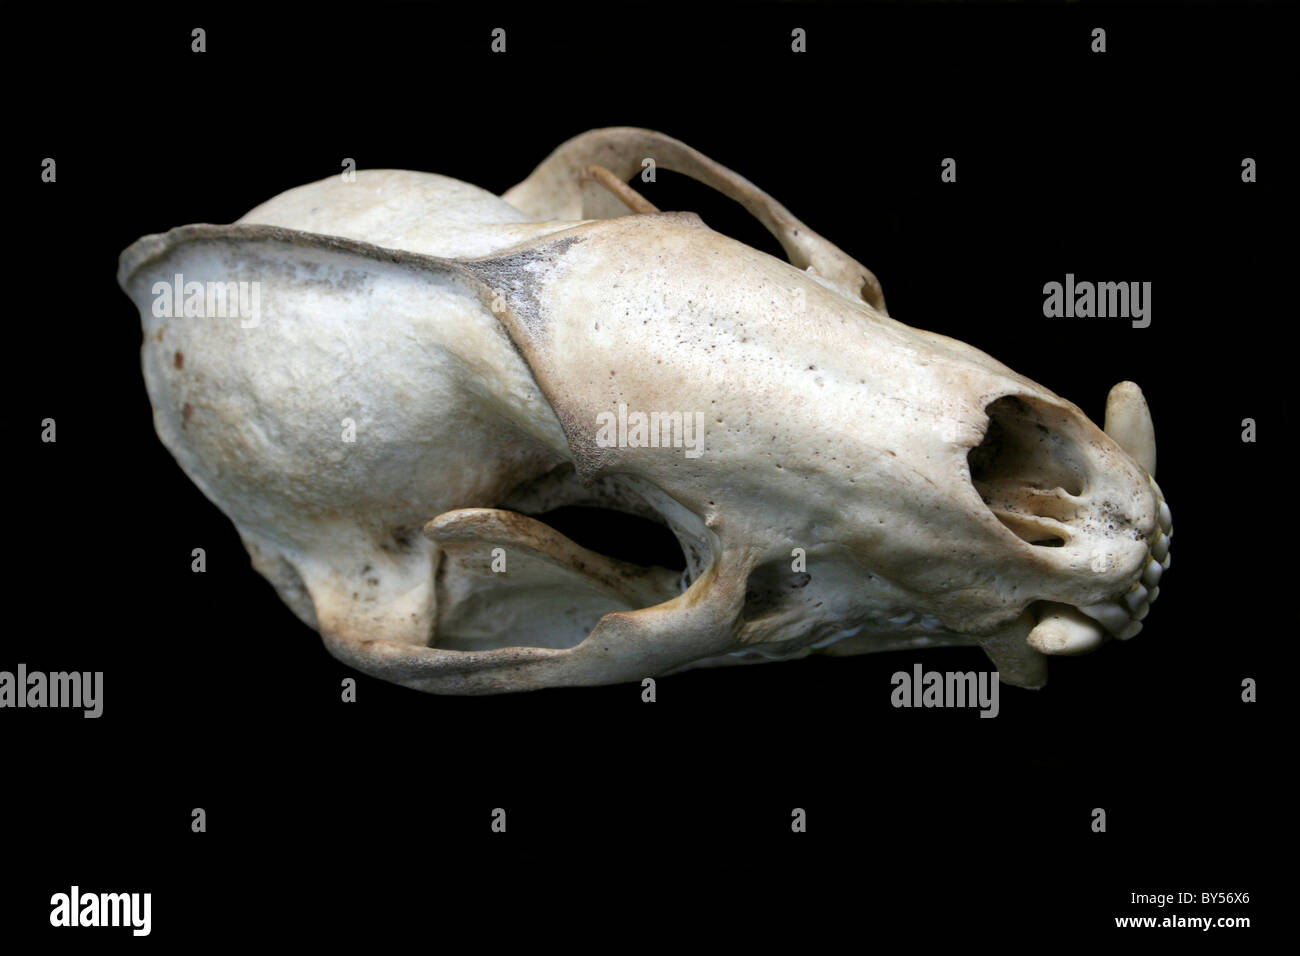 European Badger Skull Meles meles On A Black Background Stock Photo